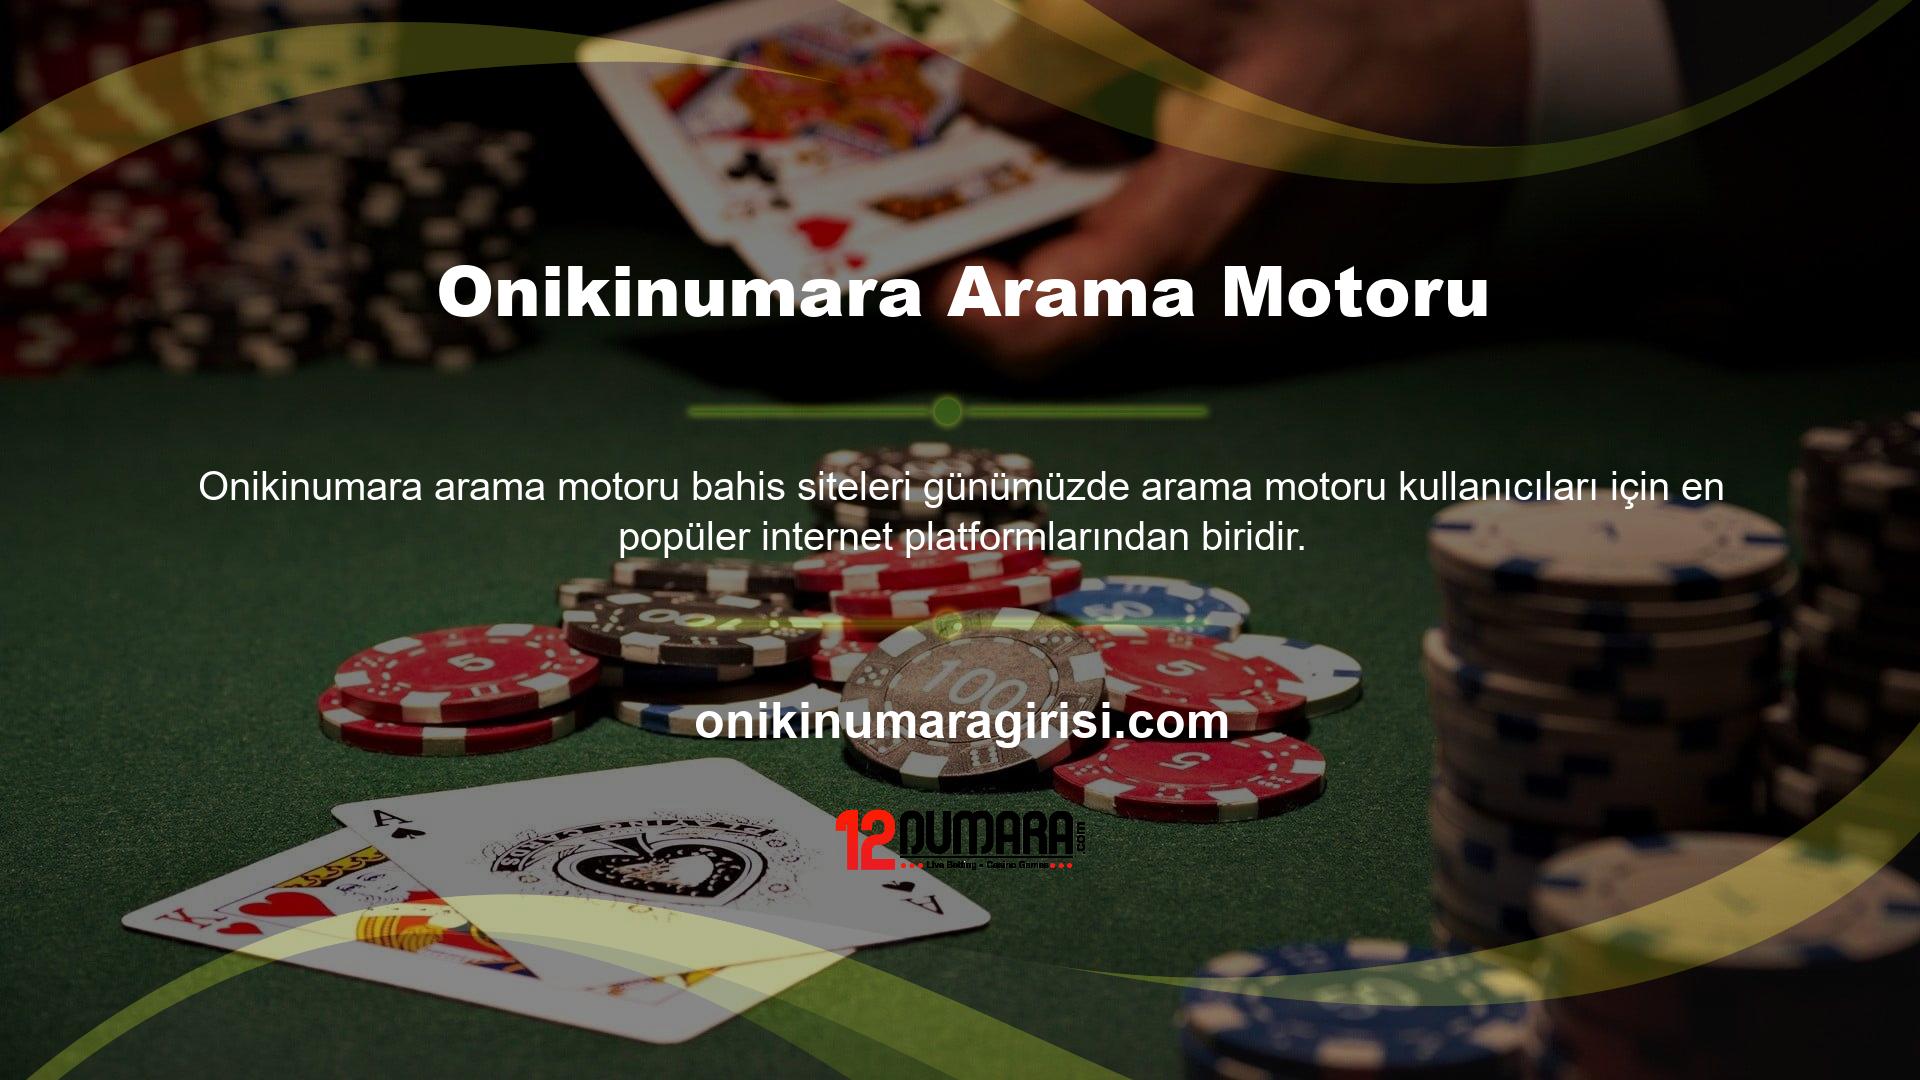 Çok sayıda kullanıcısı olan oyun sitesi Onikinumara, yabancı oldukları için vergilendirilmeyen canlı casino oyun hizmetleri sunmaktadır